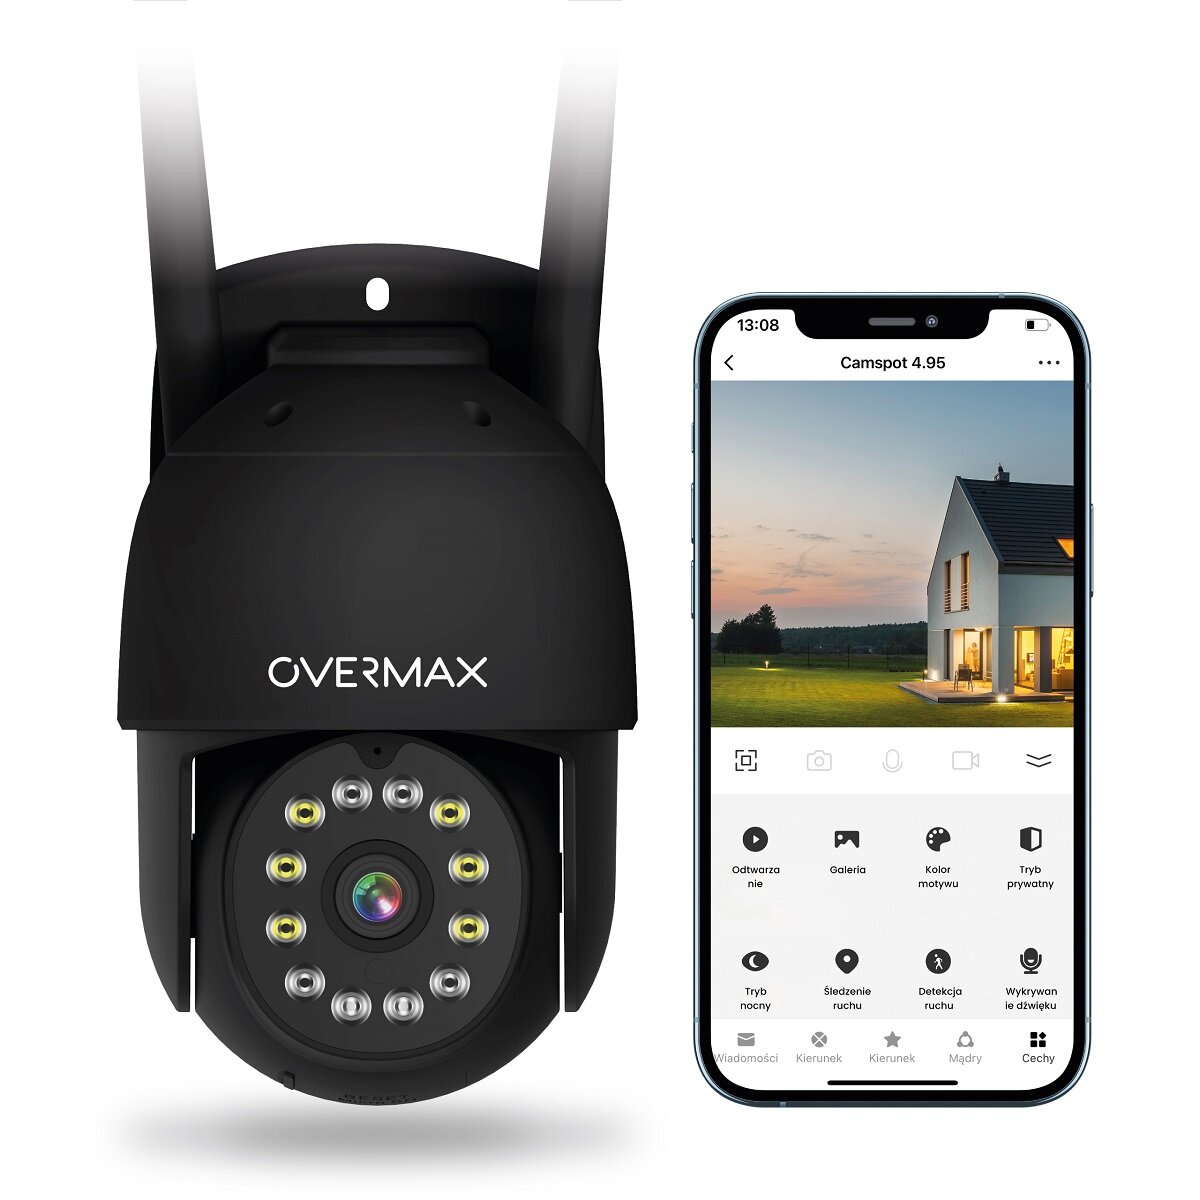 Kamera Overmax Camspot 4.95 biała WiFi widok kamery od przodu oraz smartfonu